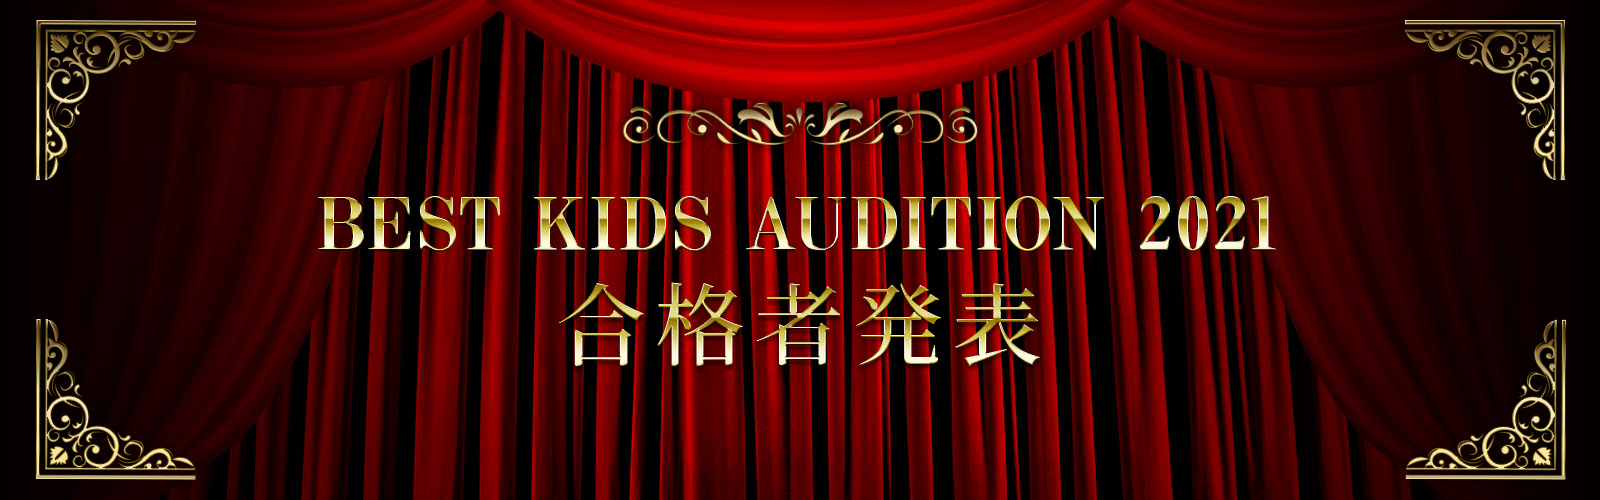 BEST KIDS AUDITION 2021 合格者発表